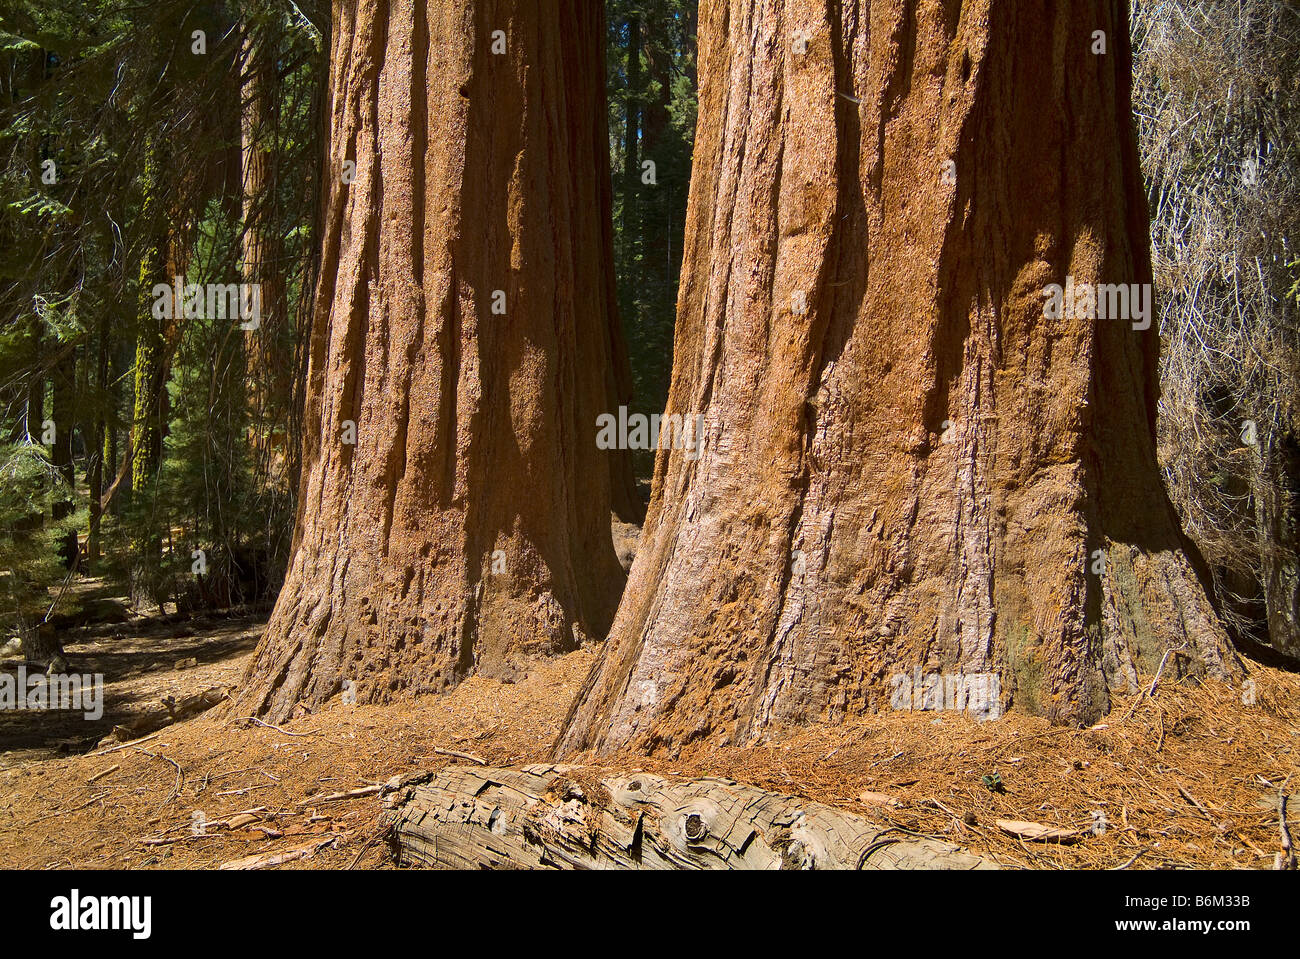 Two Redwood Sequoia Trees, Sequoia National Park, Fresno California USA Stock Photo